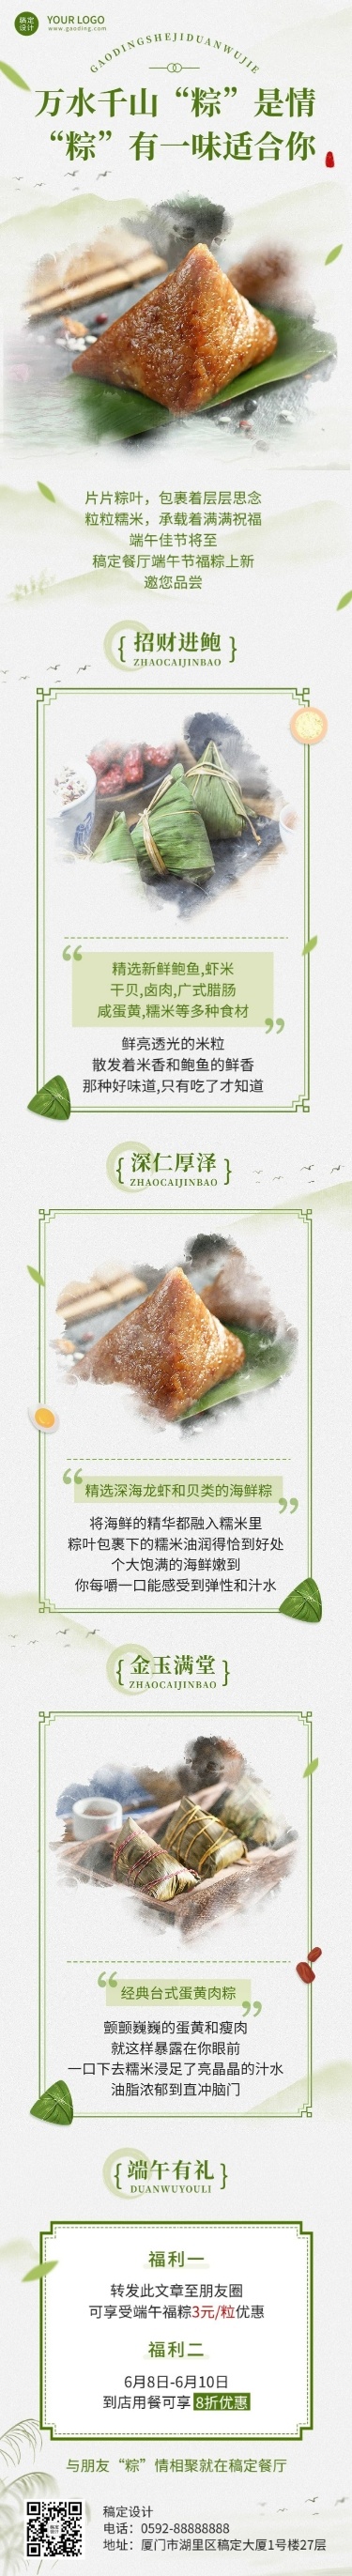 端午节餐饮粽子产品营销文章长图